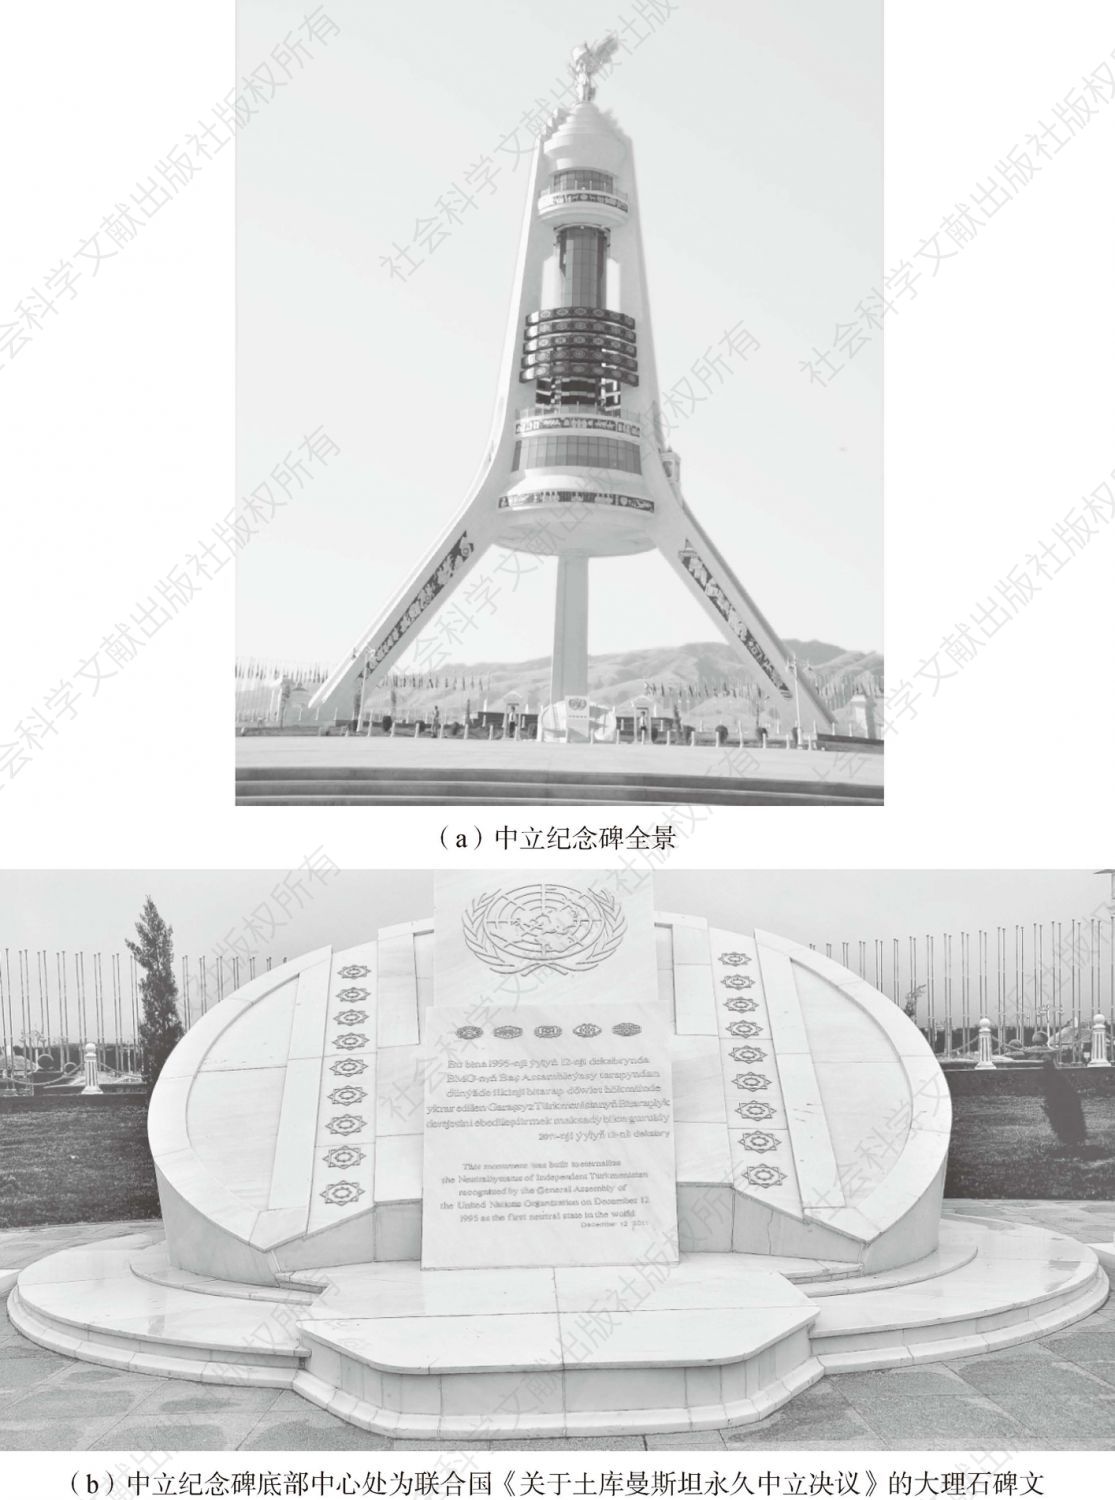 图2-1 土库曼斯坦中立的永恒物证——土库曼斯坦中立纪念碑